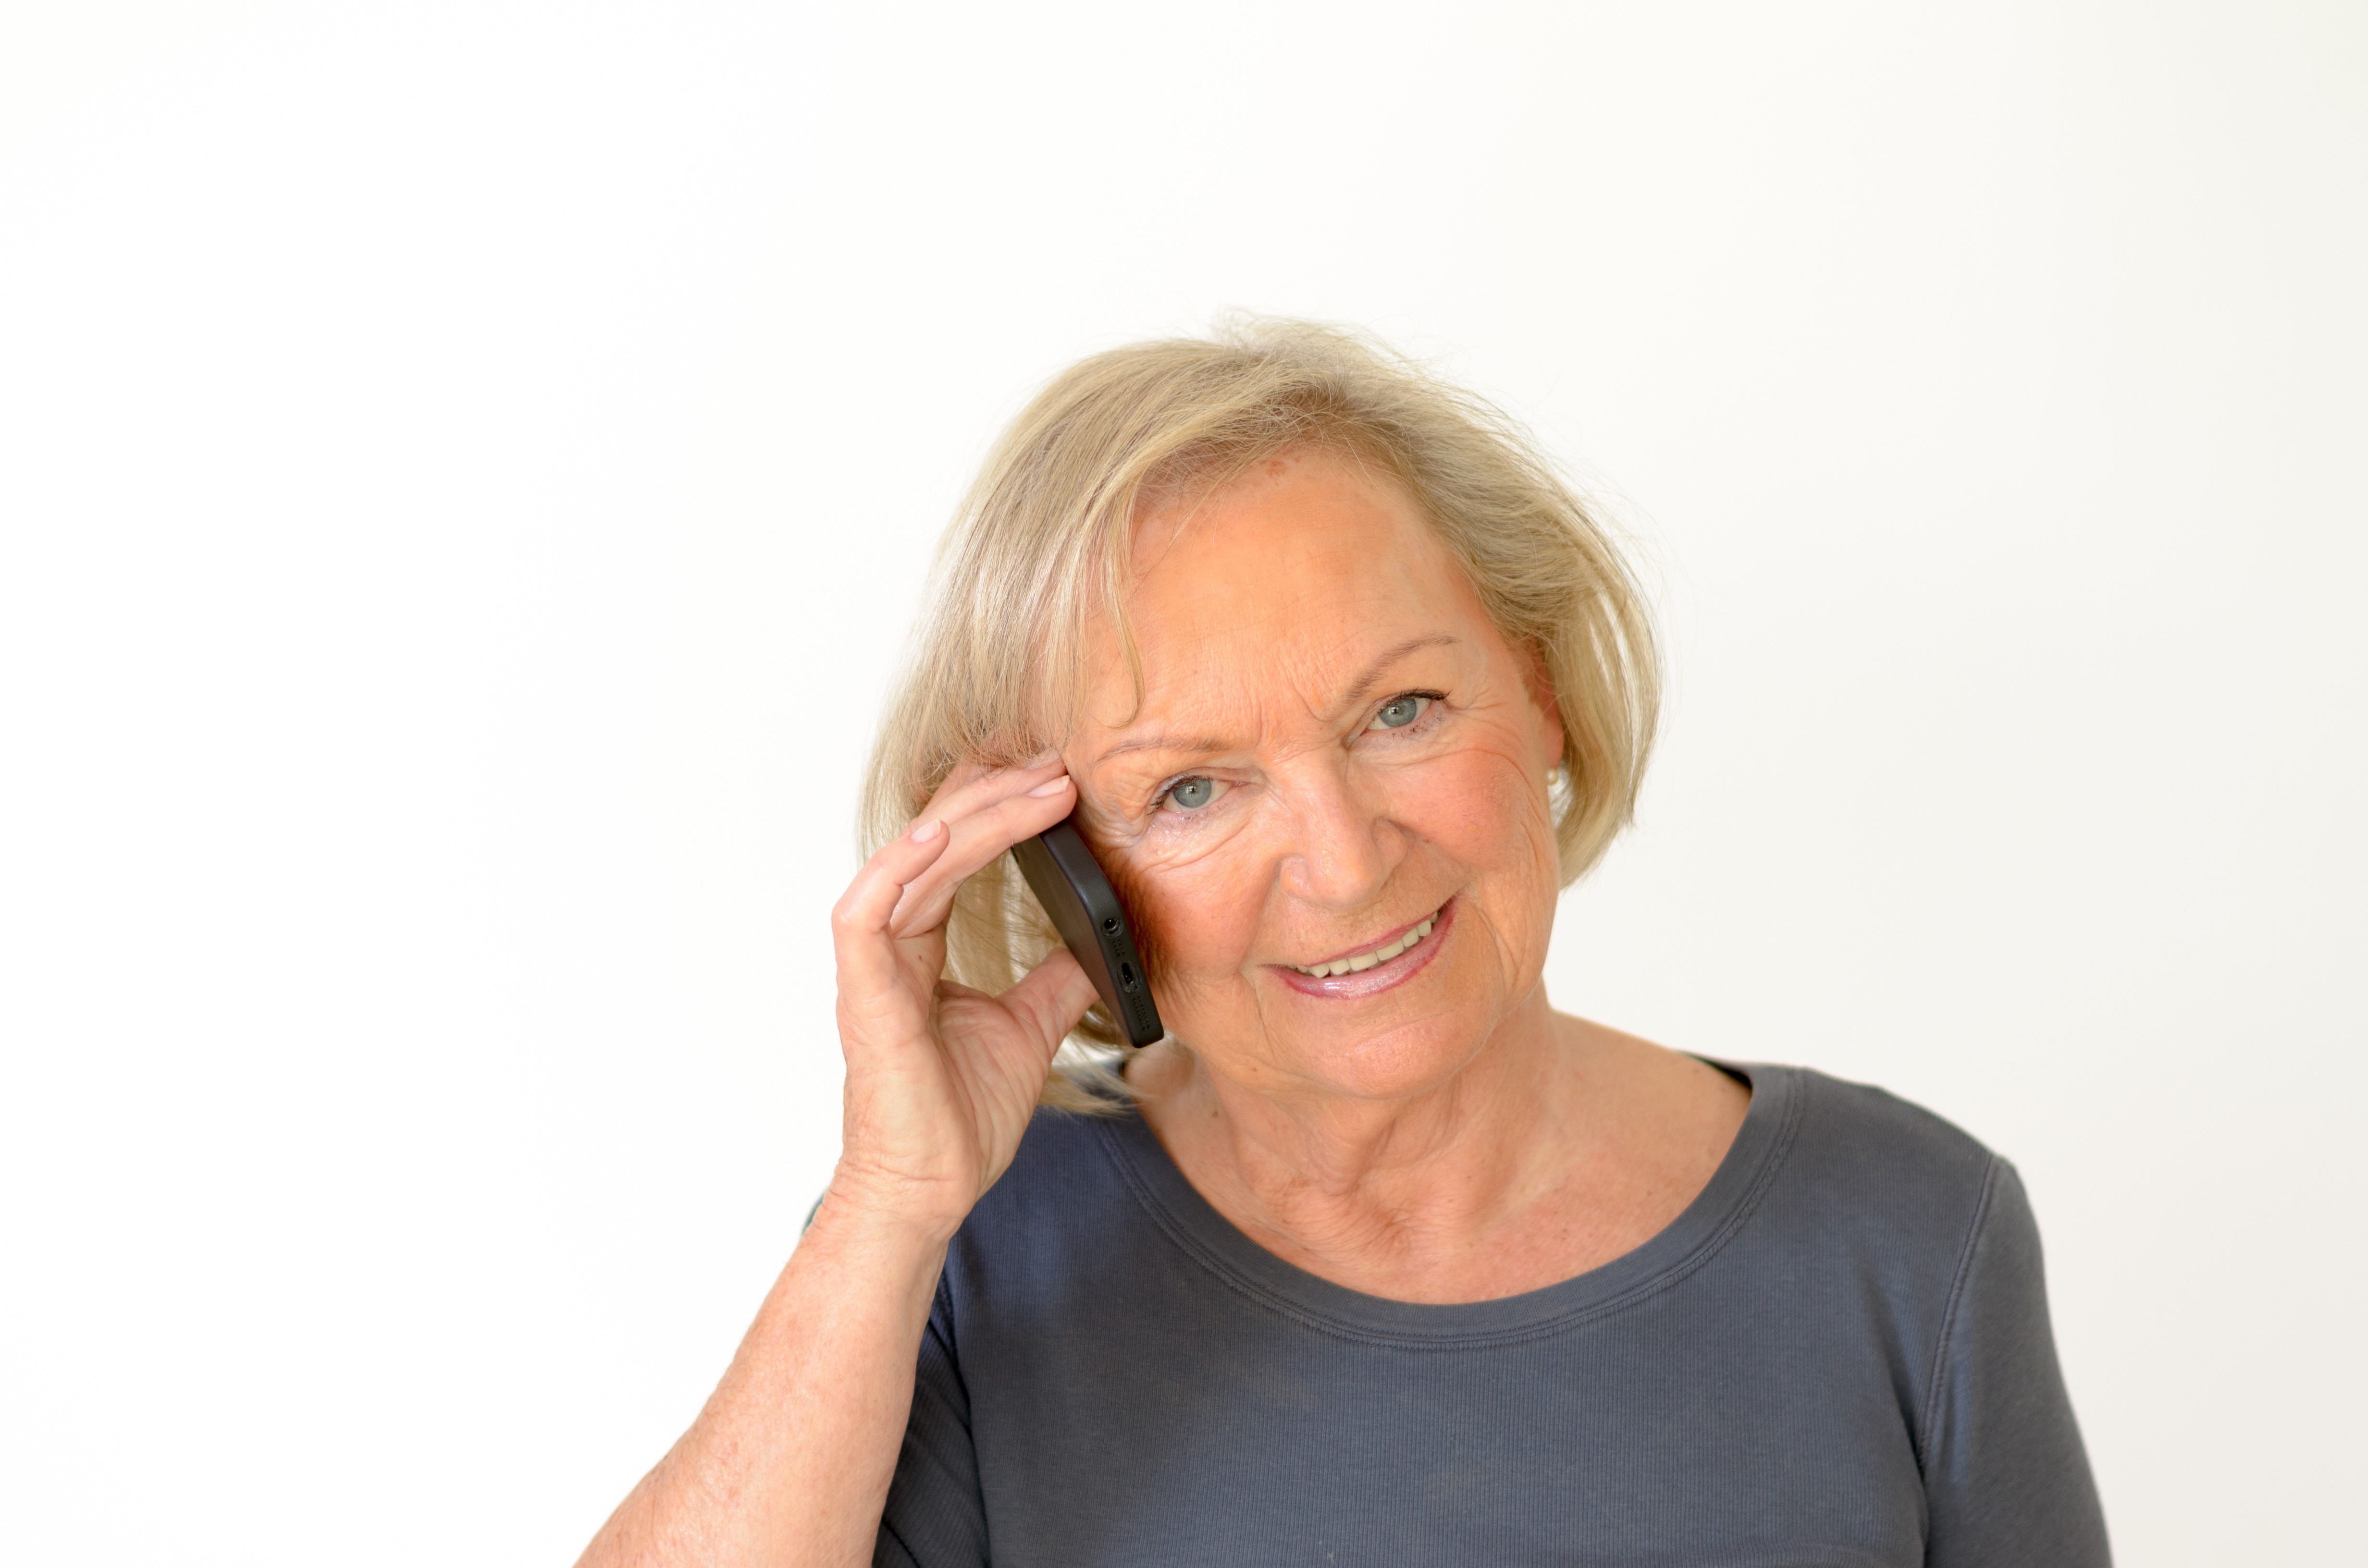 Connaissez-vous toutes les adresses utiles pour informer les personnes âgées?